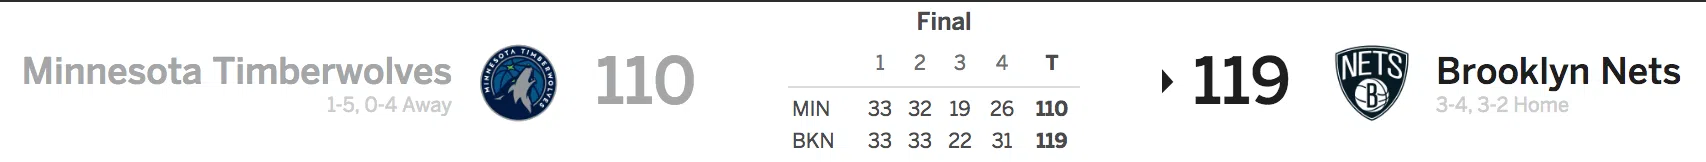 Nets vs Timberwolves 11/8/16 Score